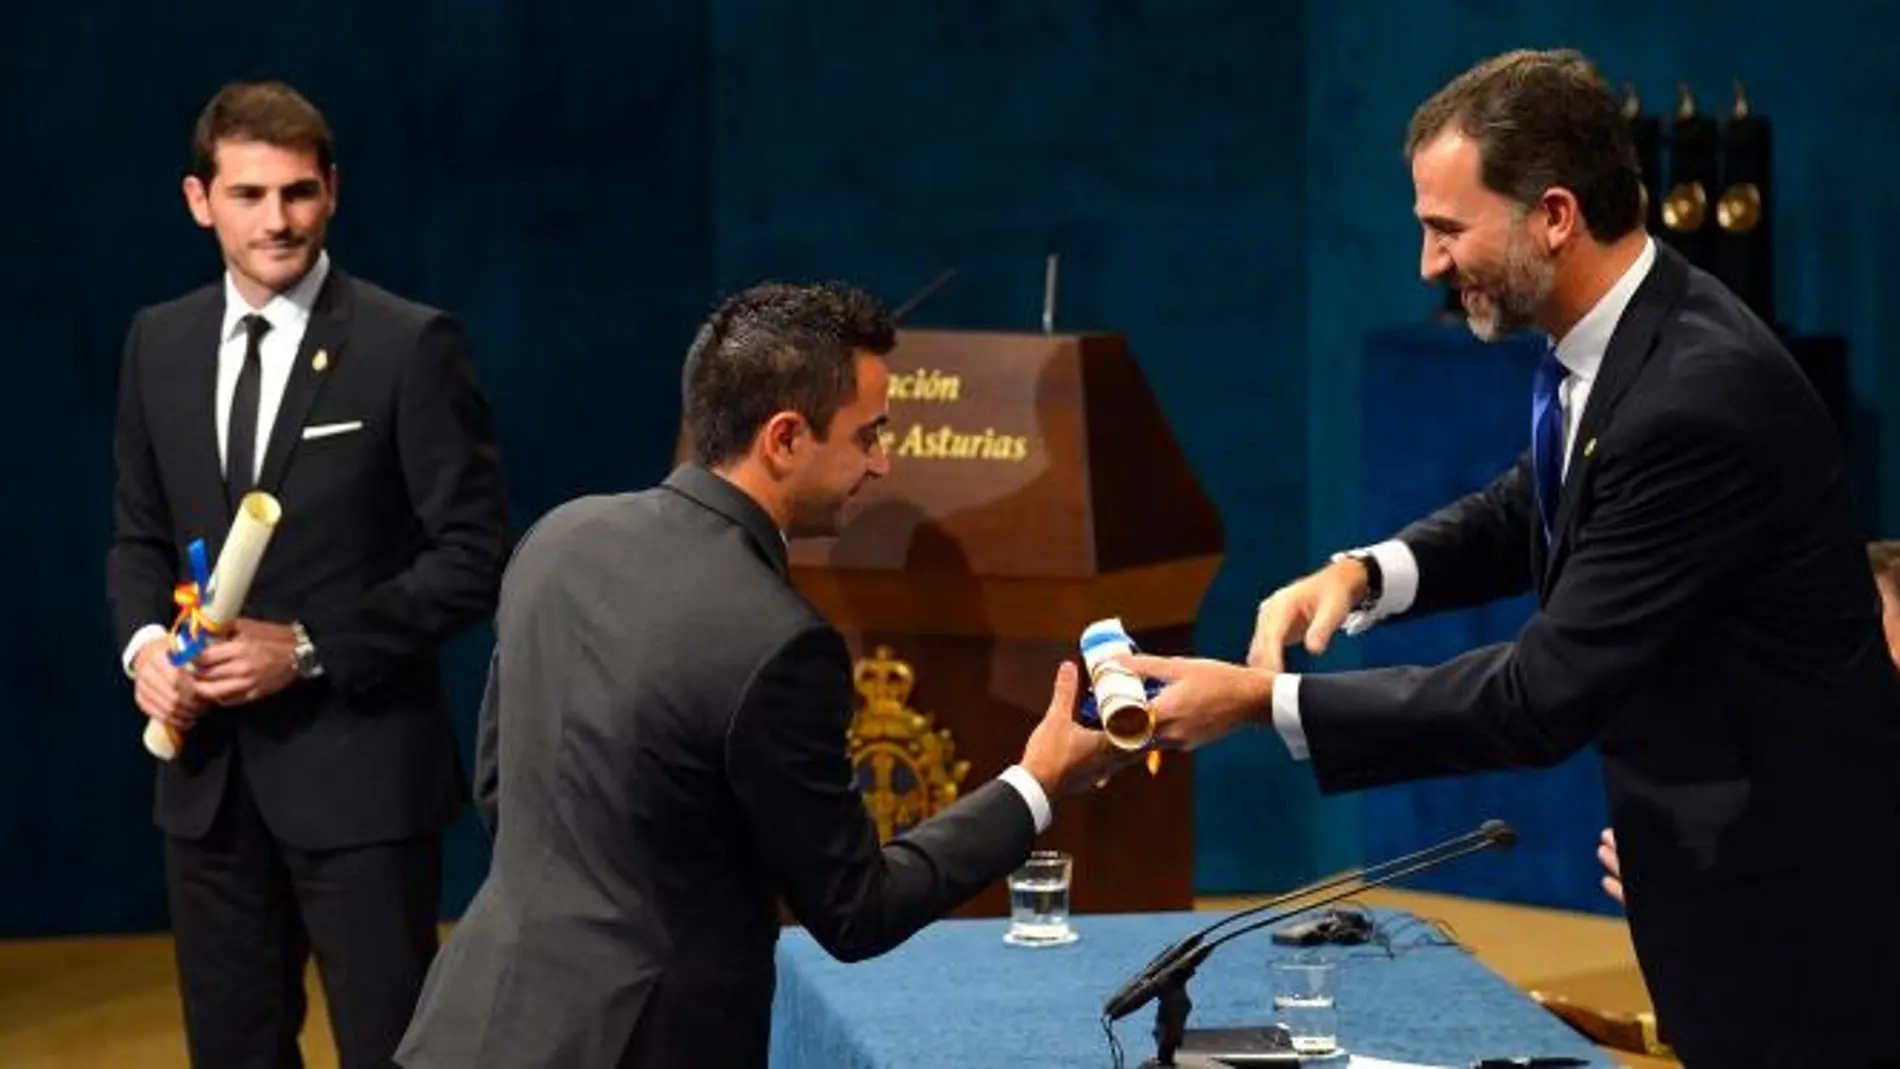 Don Felipe entrega el Premio a Xavi Hernández en presencia de Iker Casillas